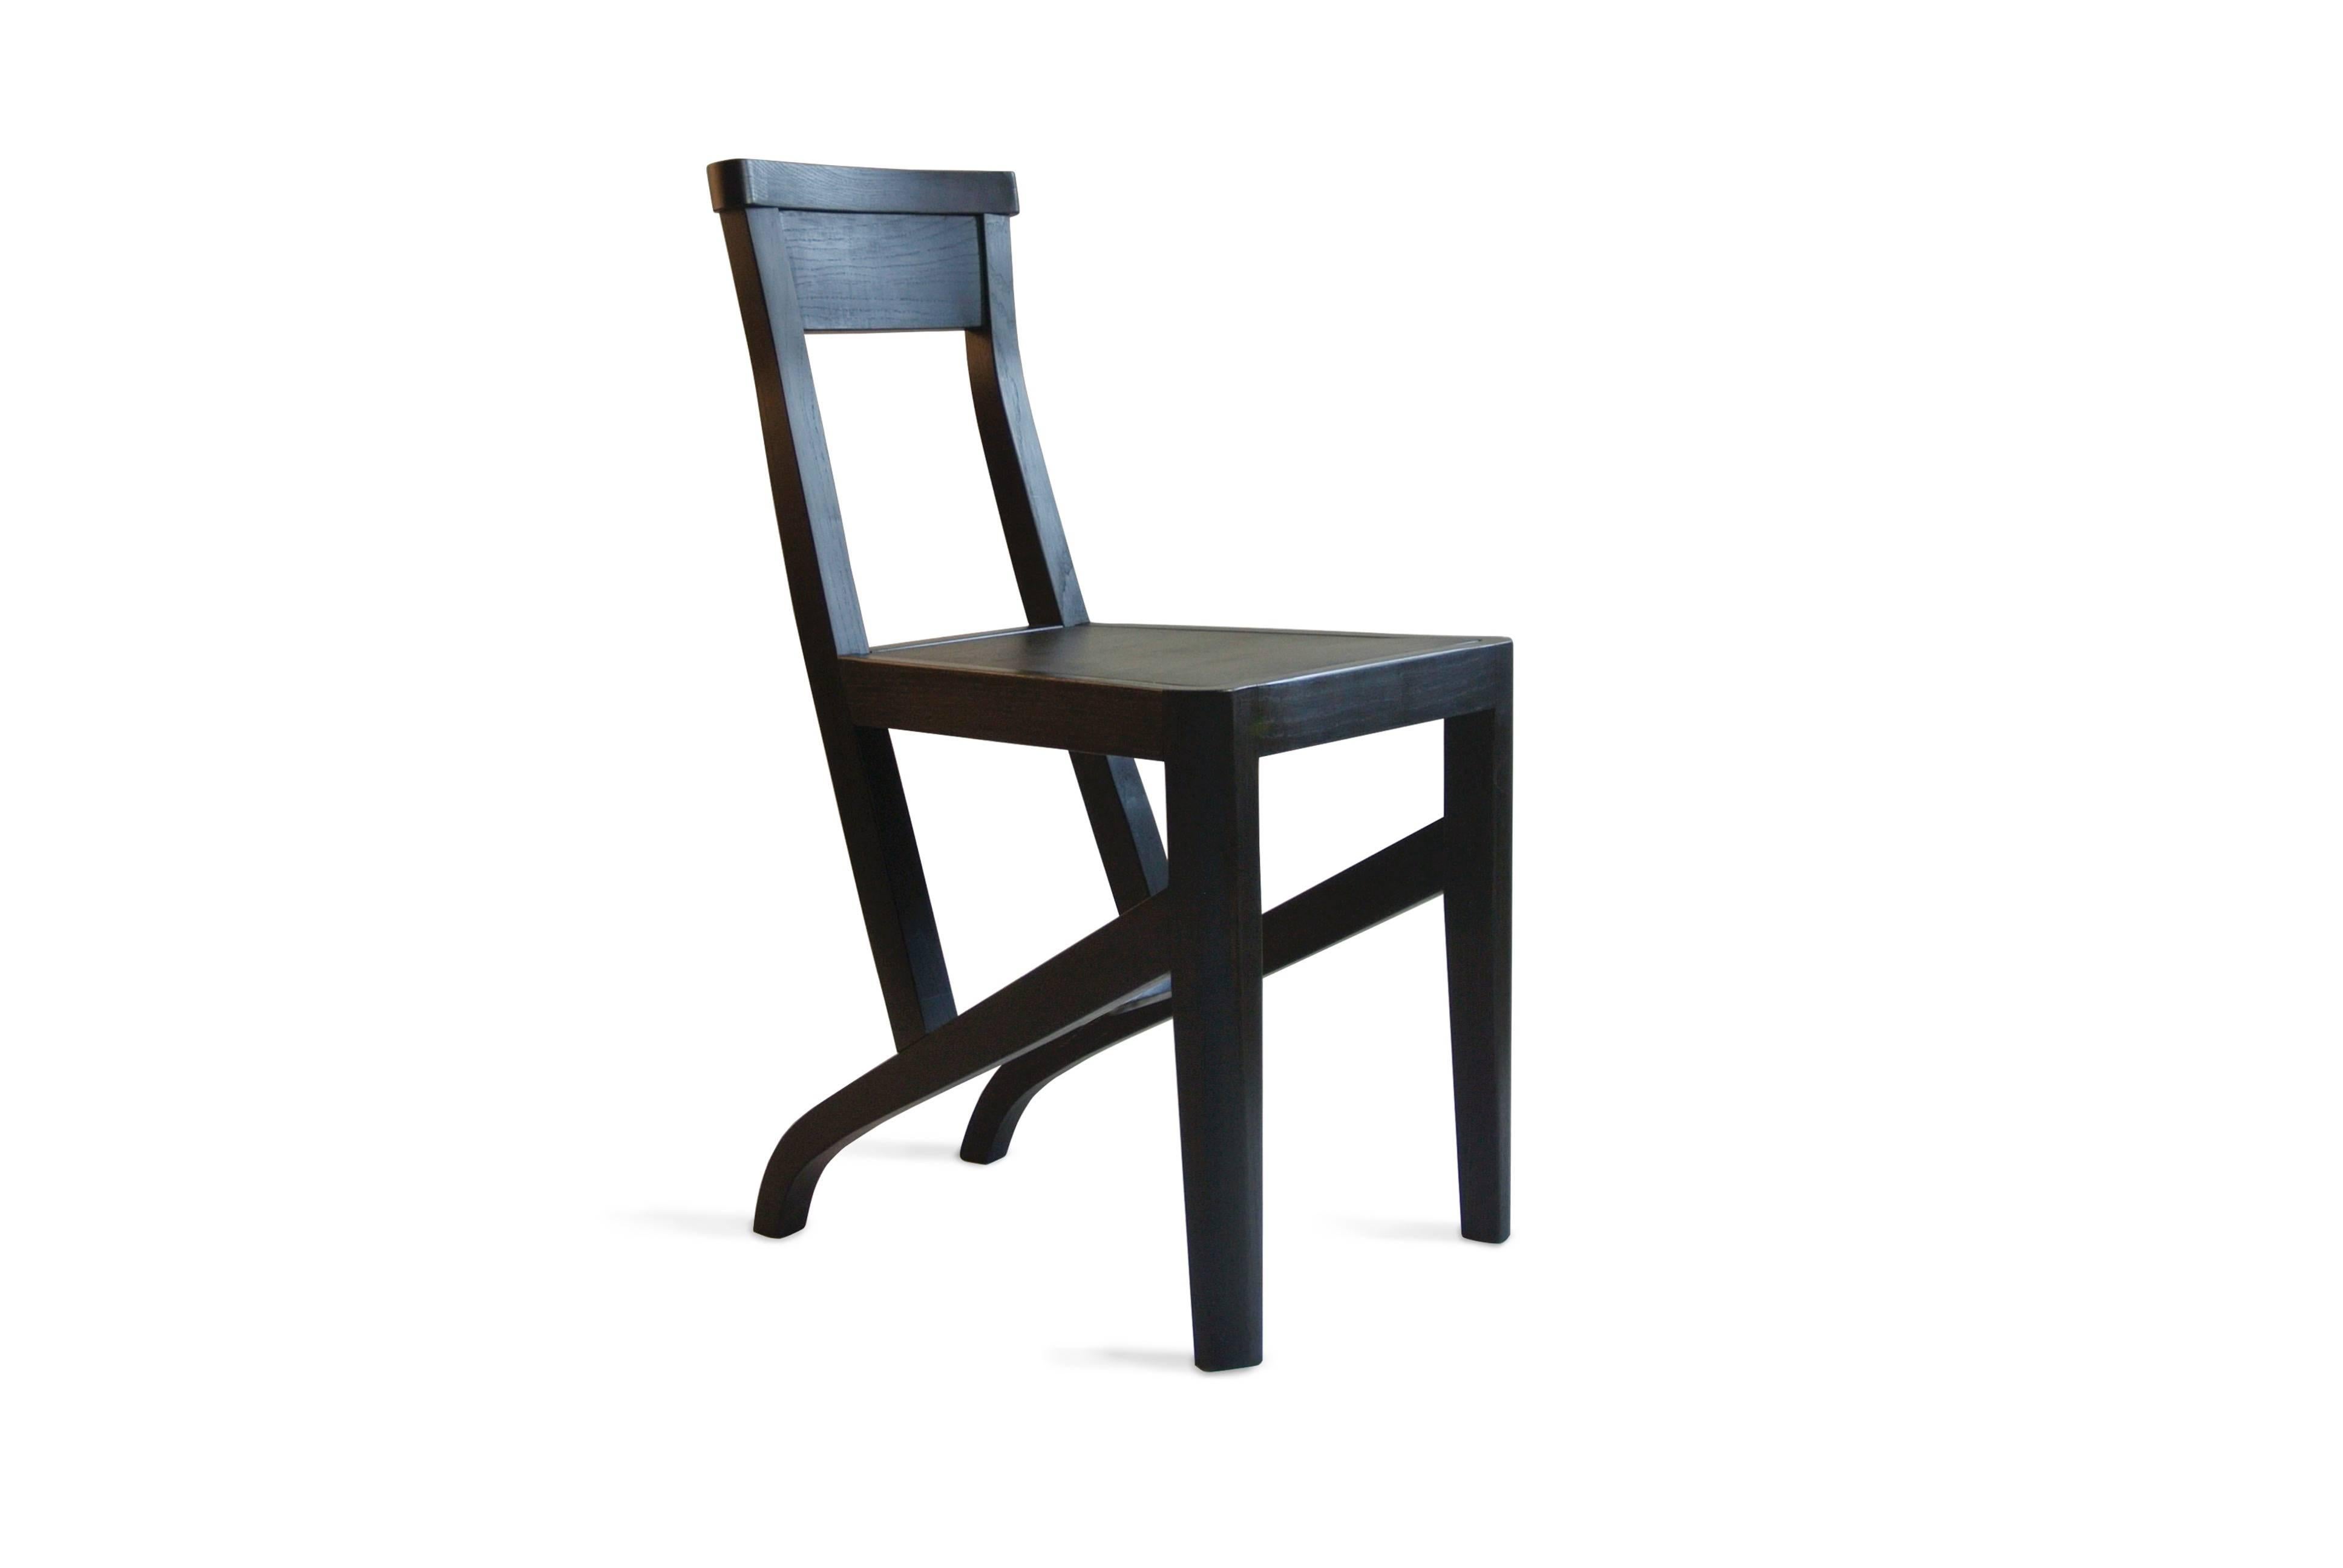 Diese zweite, einfachere Version des markanten Potentino-Stuhls ergänzt die Serie. Mit einer niedrigeren Rückenlehne und glatteren Details ist er sowohl für Restaurants als auch für die heimische Küche geeignet. In seiner Schlichtheit gelingt es